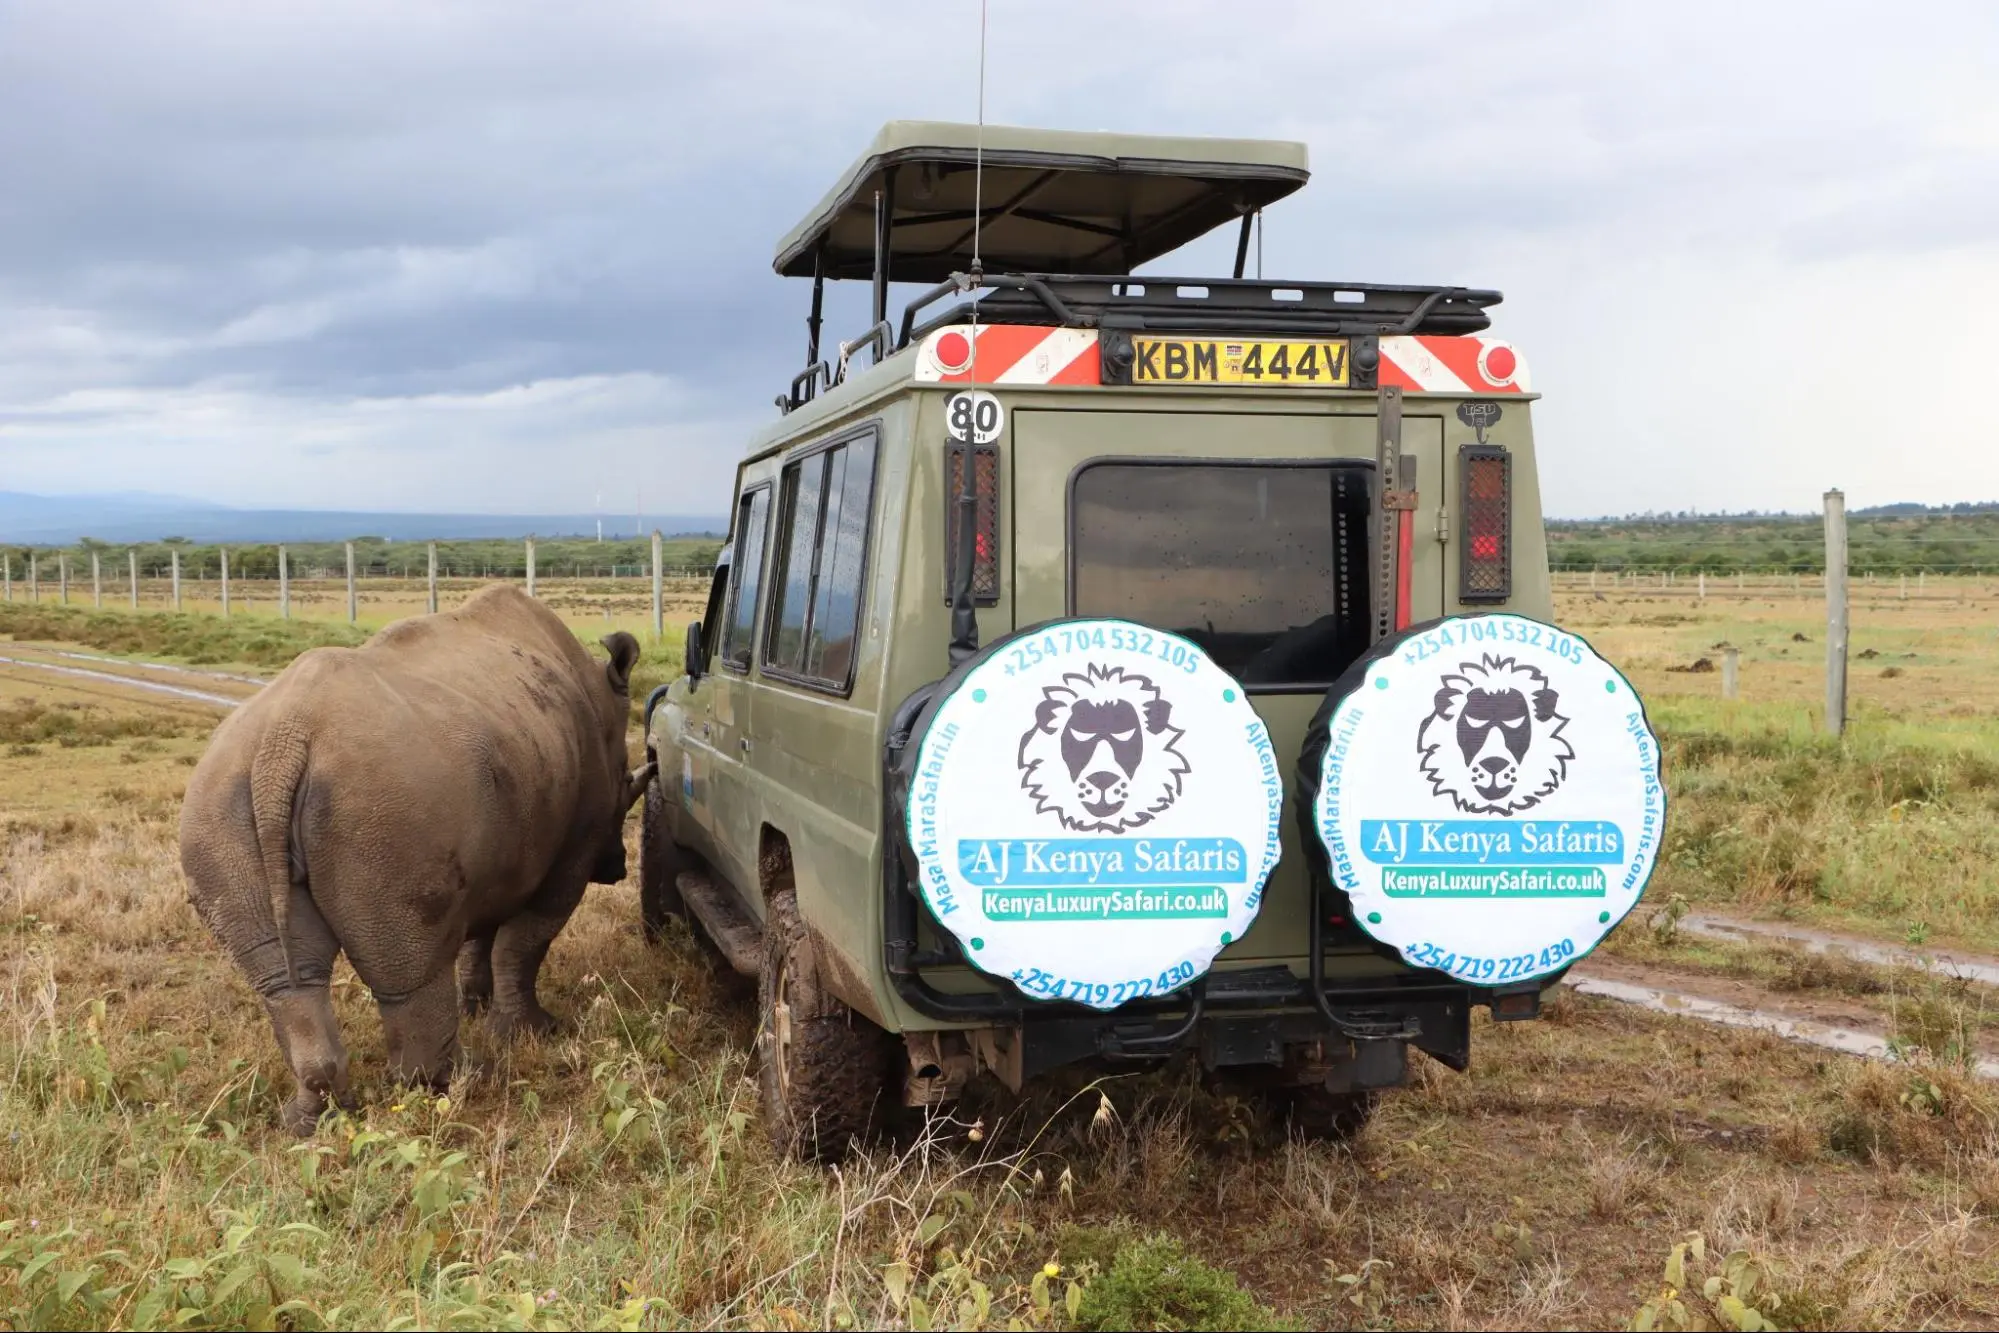 Private Kenya safari tours - Rhino in Ol Pejeta conservancy